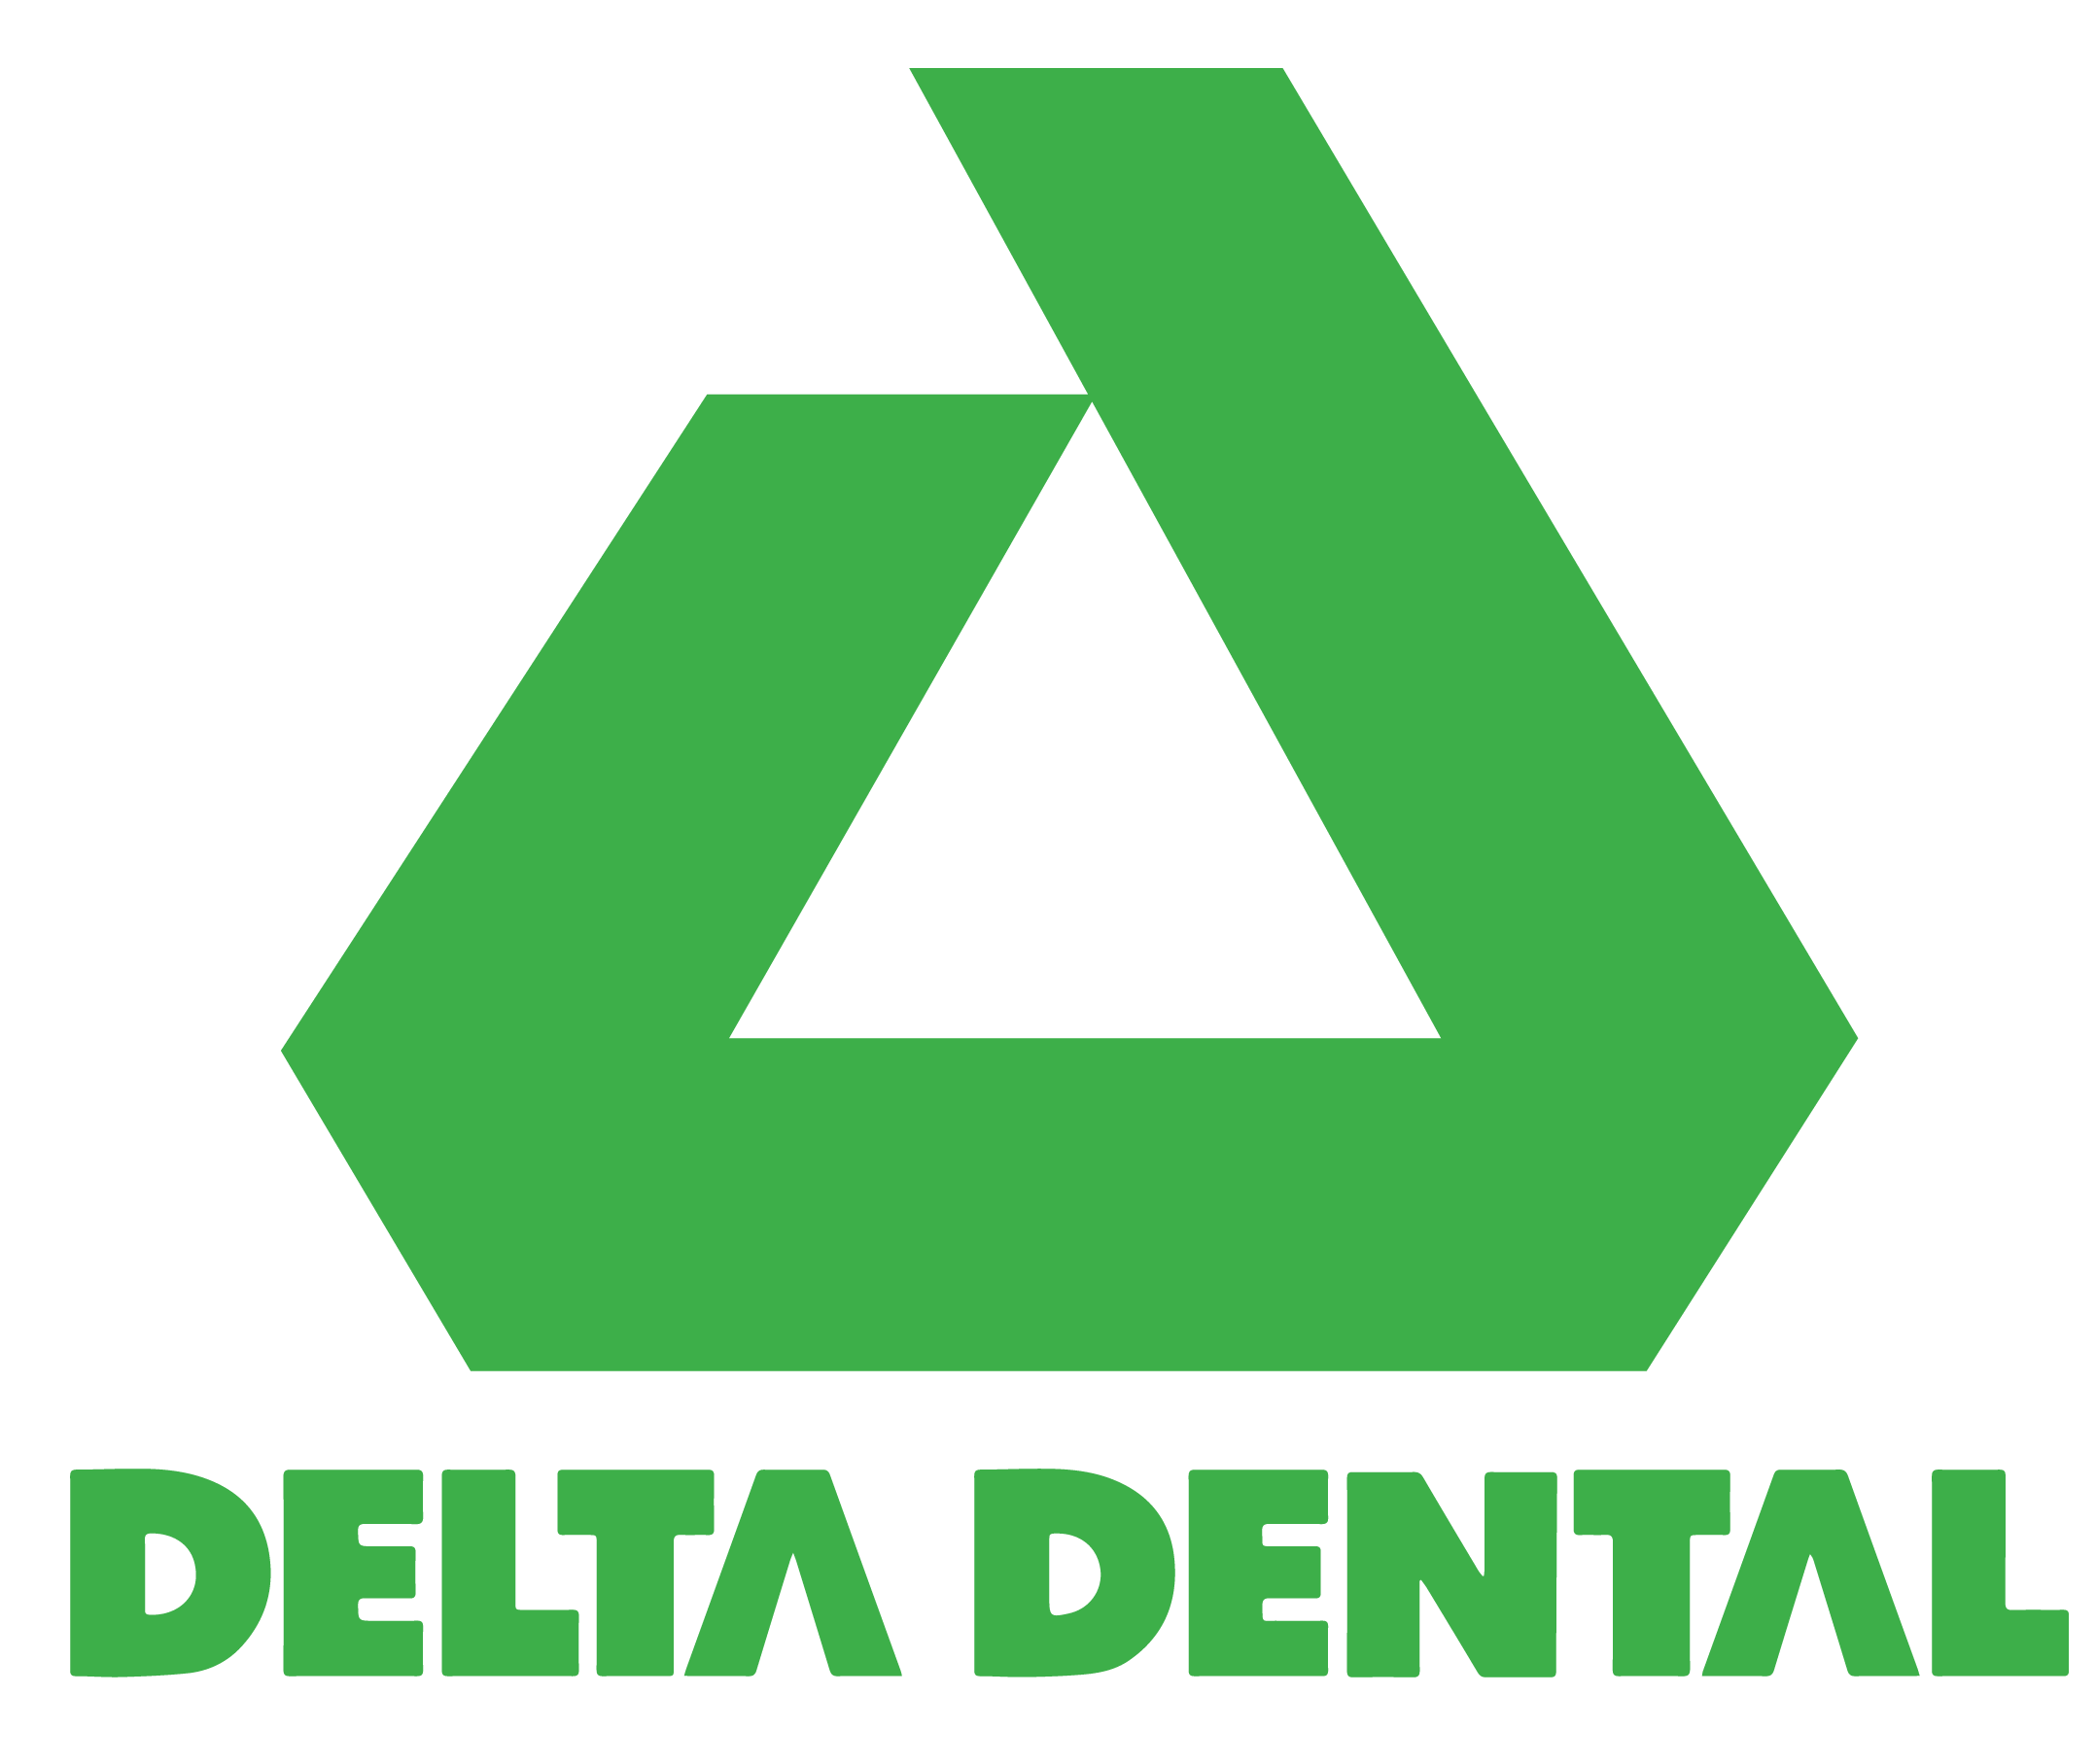 Delta-Dental-transparents.png